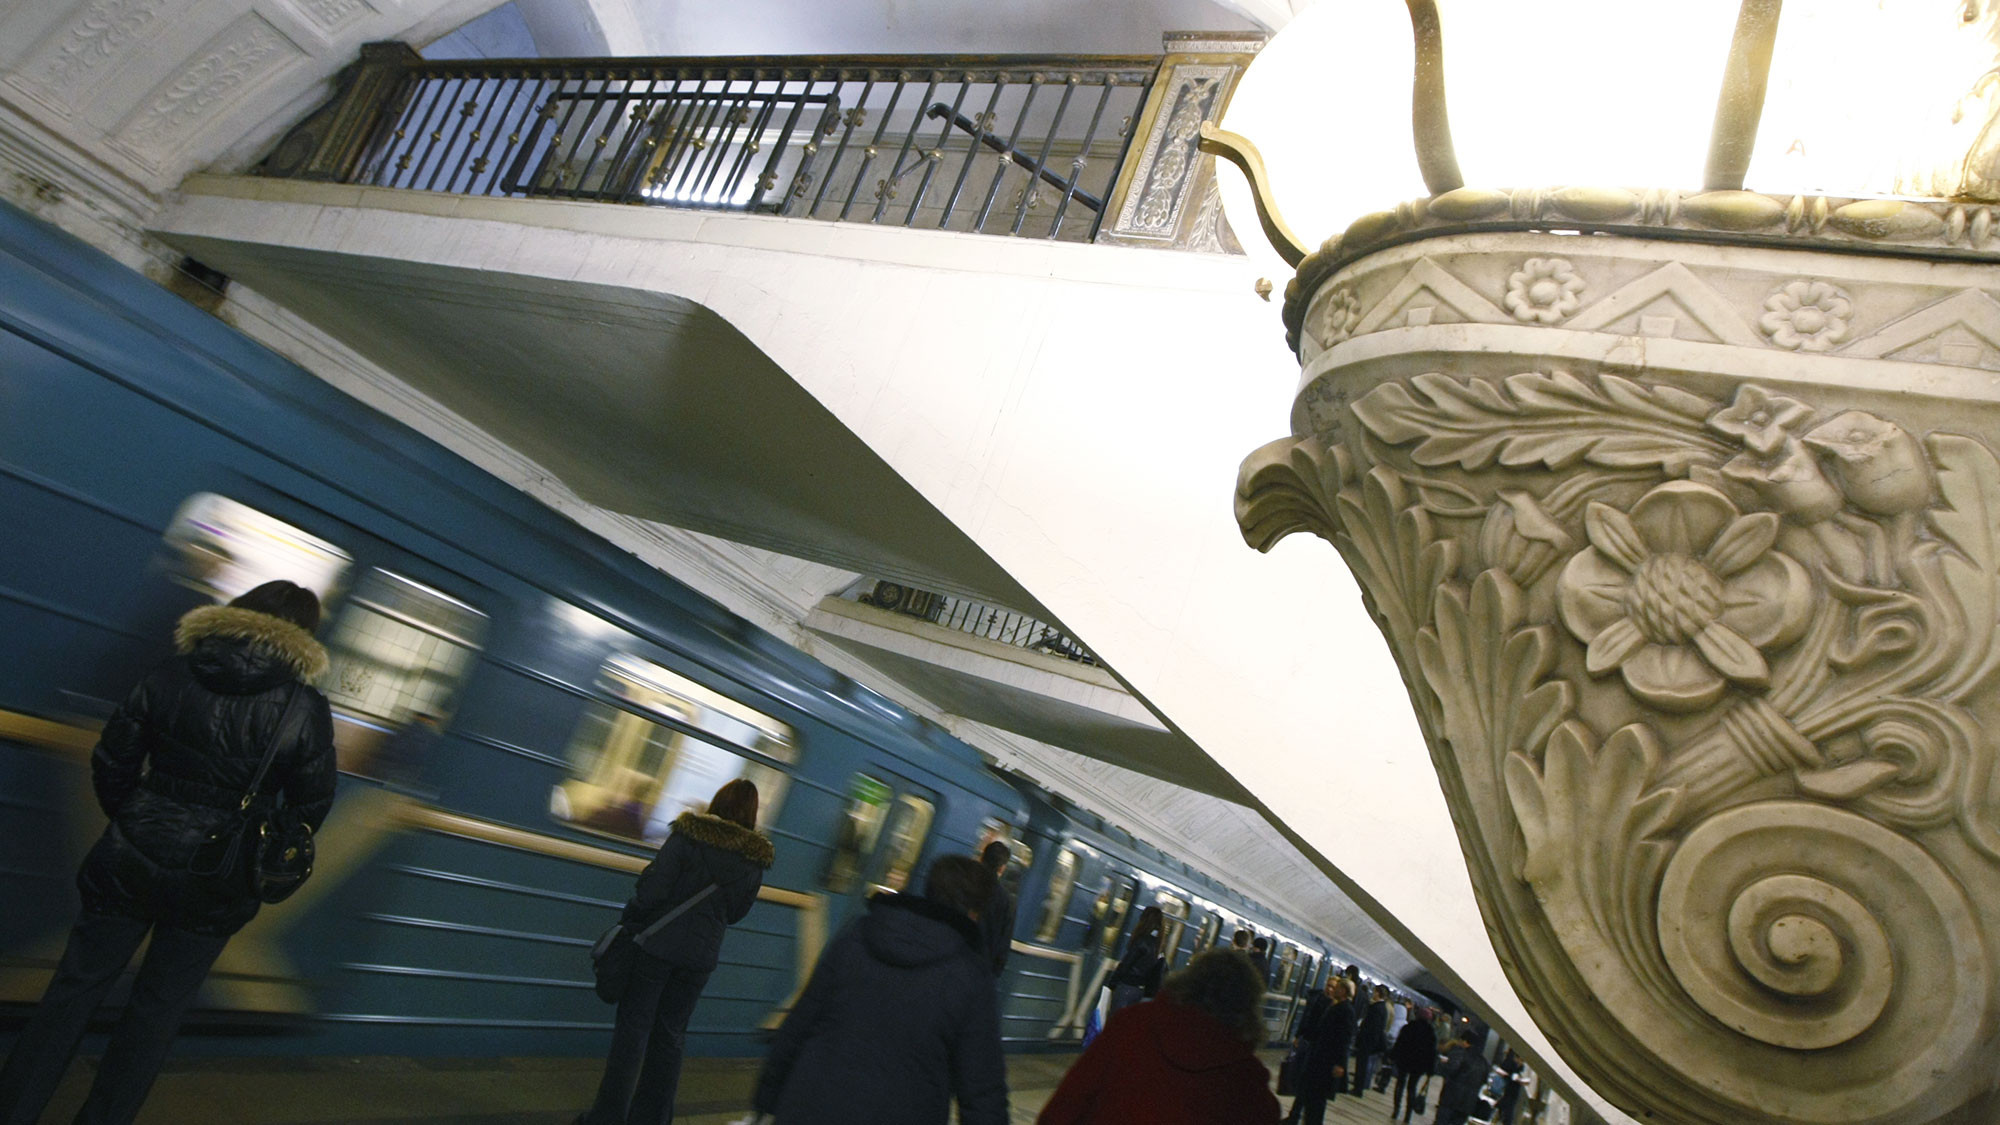 метро белорусская кольцевая